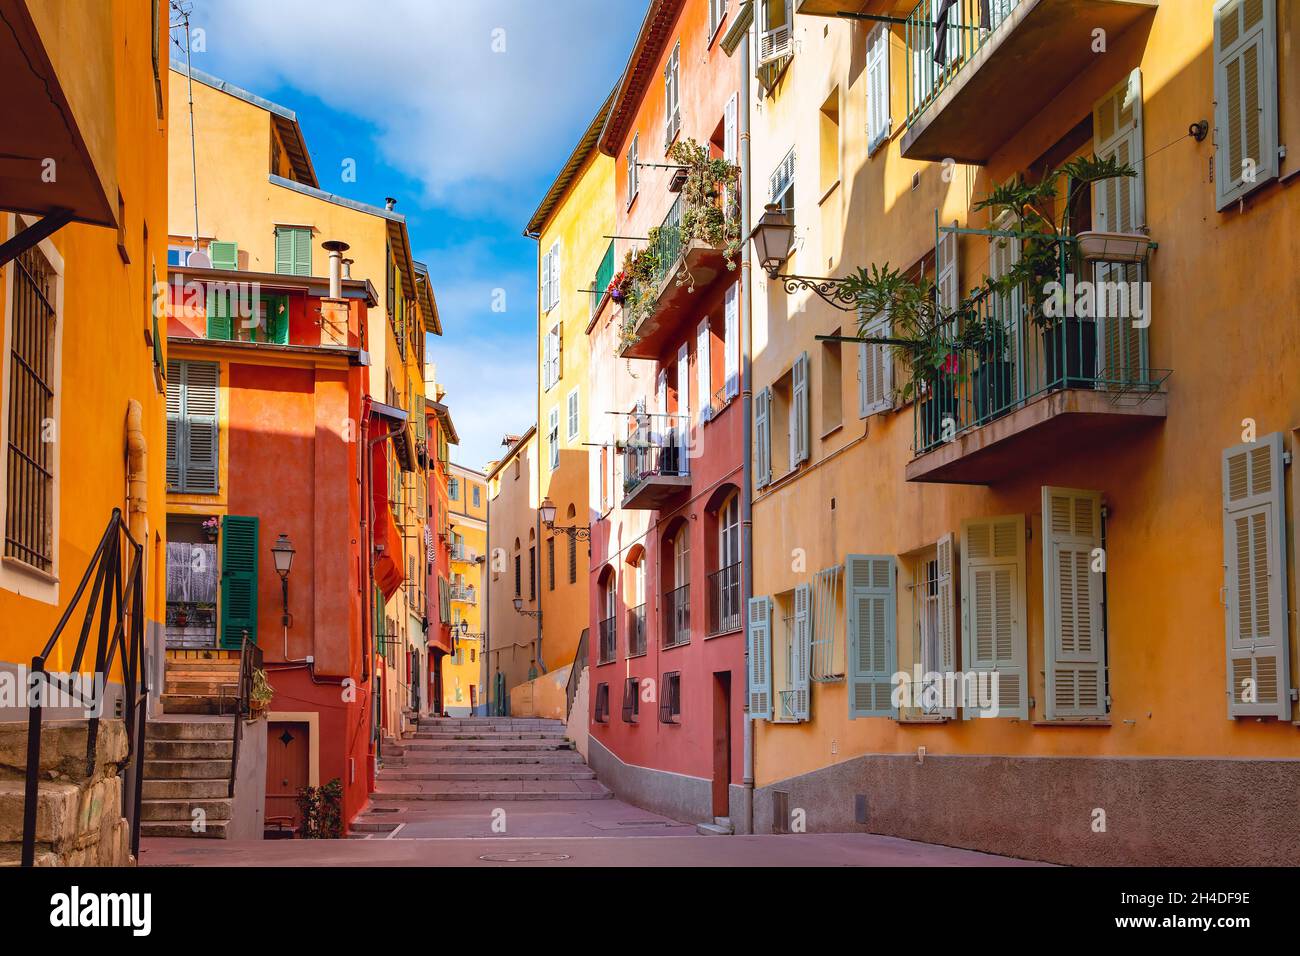 Sonnige, farbenfrohe historische Häuser in der Altstadt von Nizza, an der französischen Riviera, Cote d'Azur, Frankreich Stockfoto